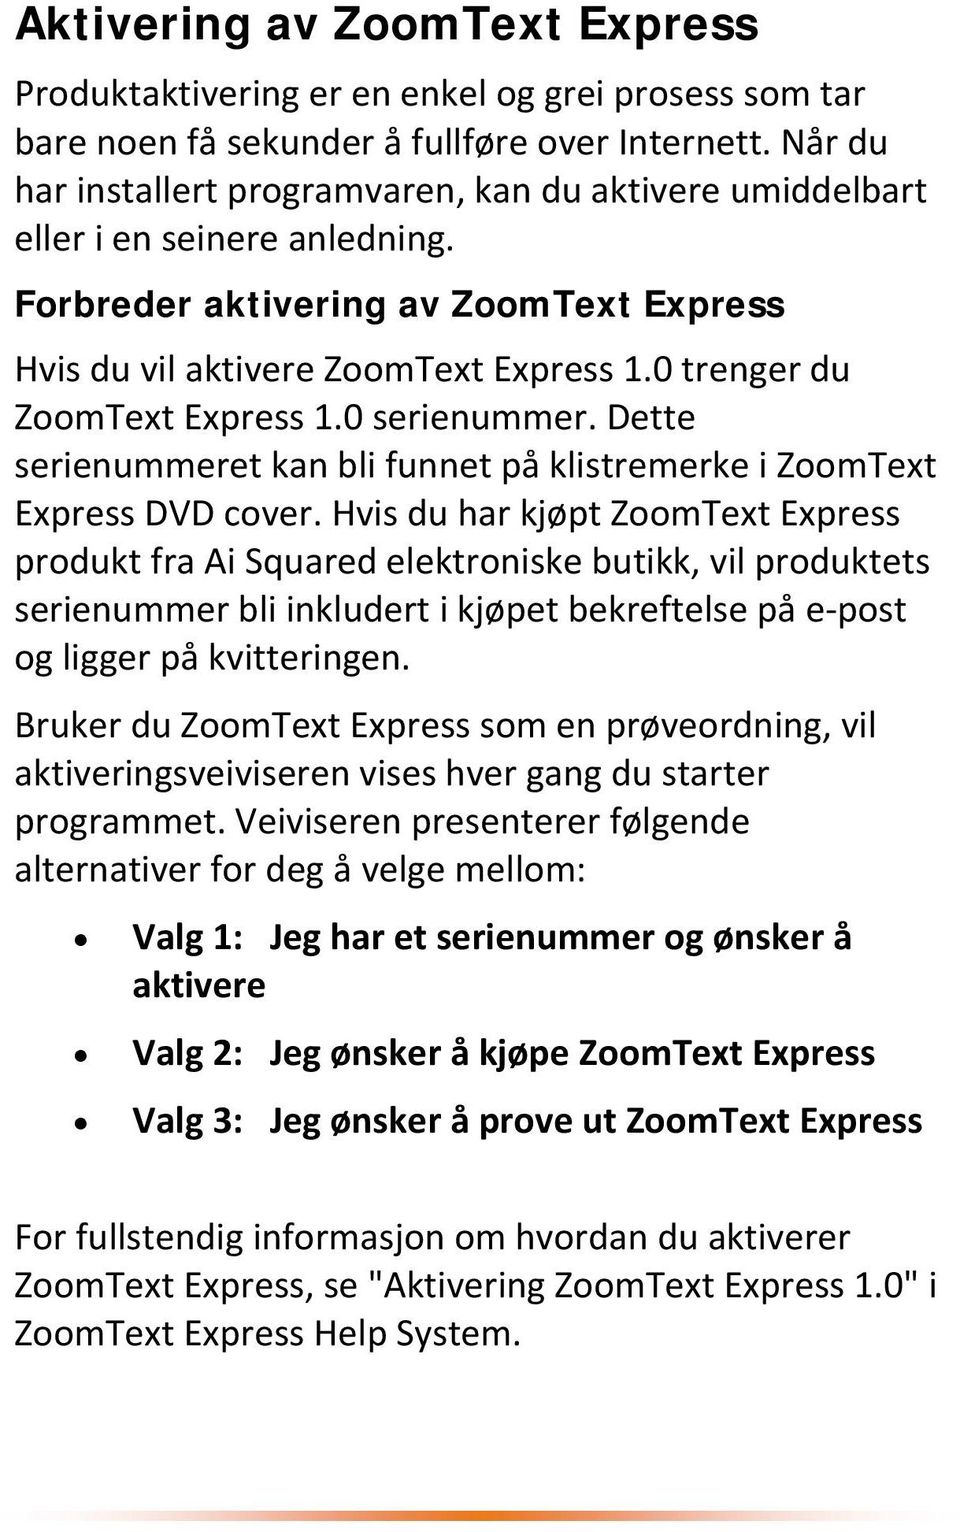 0 trenger du ZoomText Express 1.0 serienummer. Dette serienummeret kan bli funnet på klistremerke i ZoomText Express DVD cover.